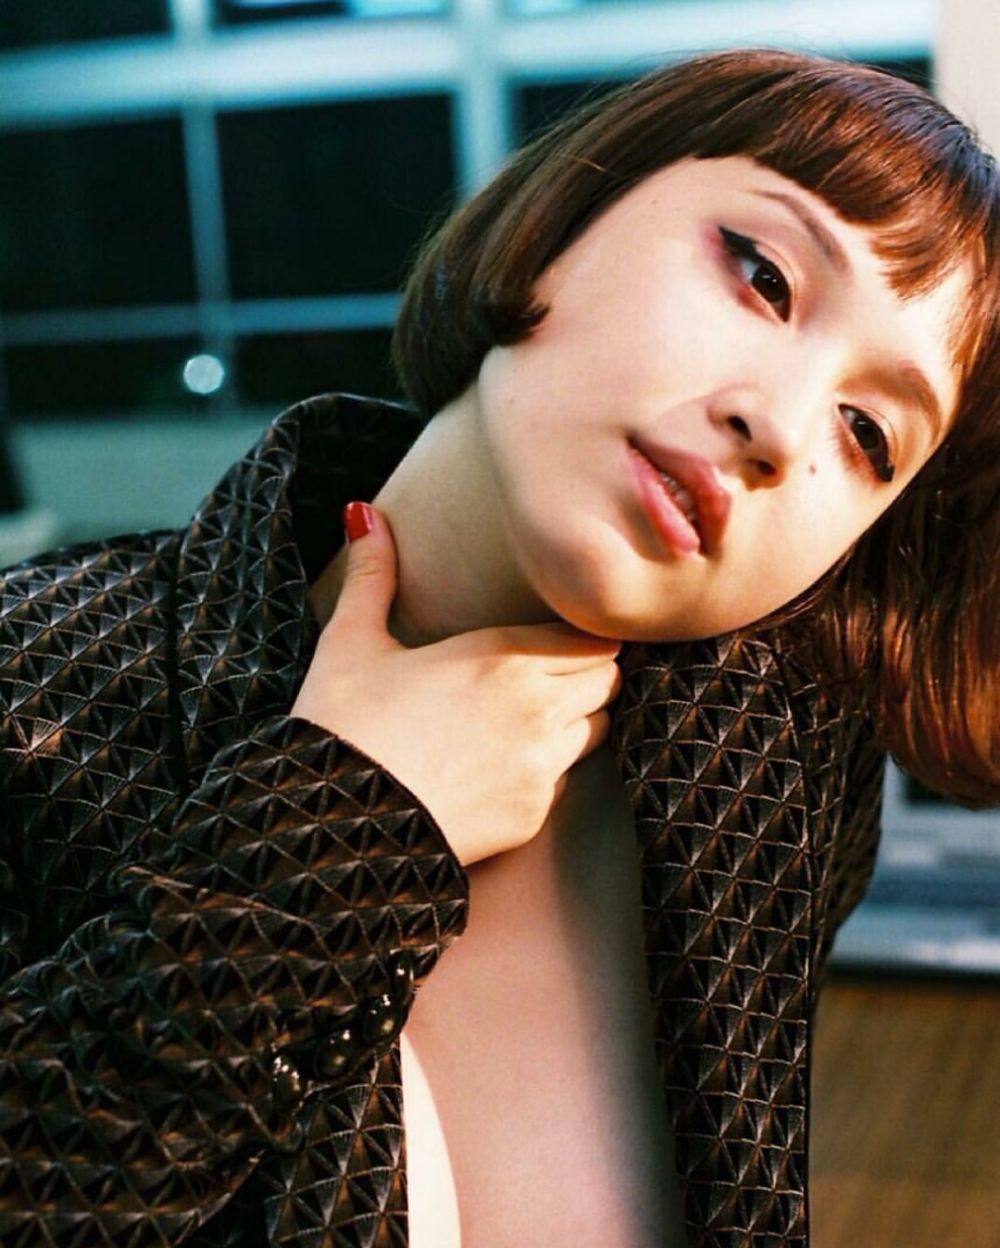 Yuka Mizuhara Sexy and Hottest Photos , Latest Pics